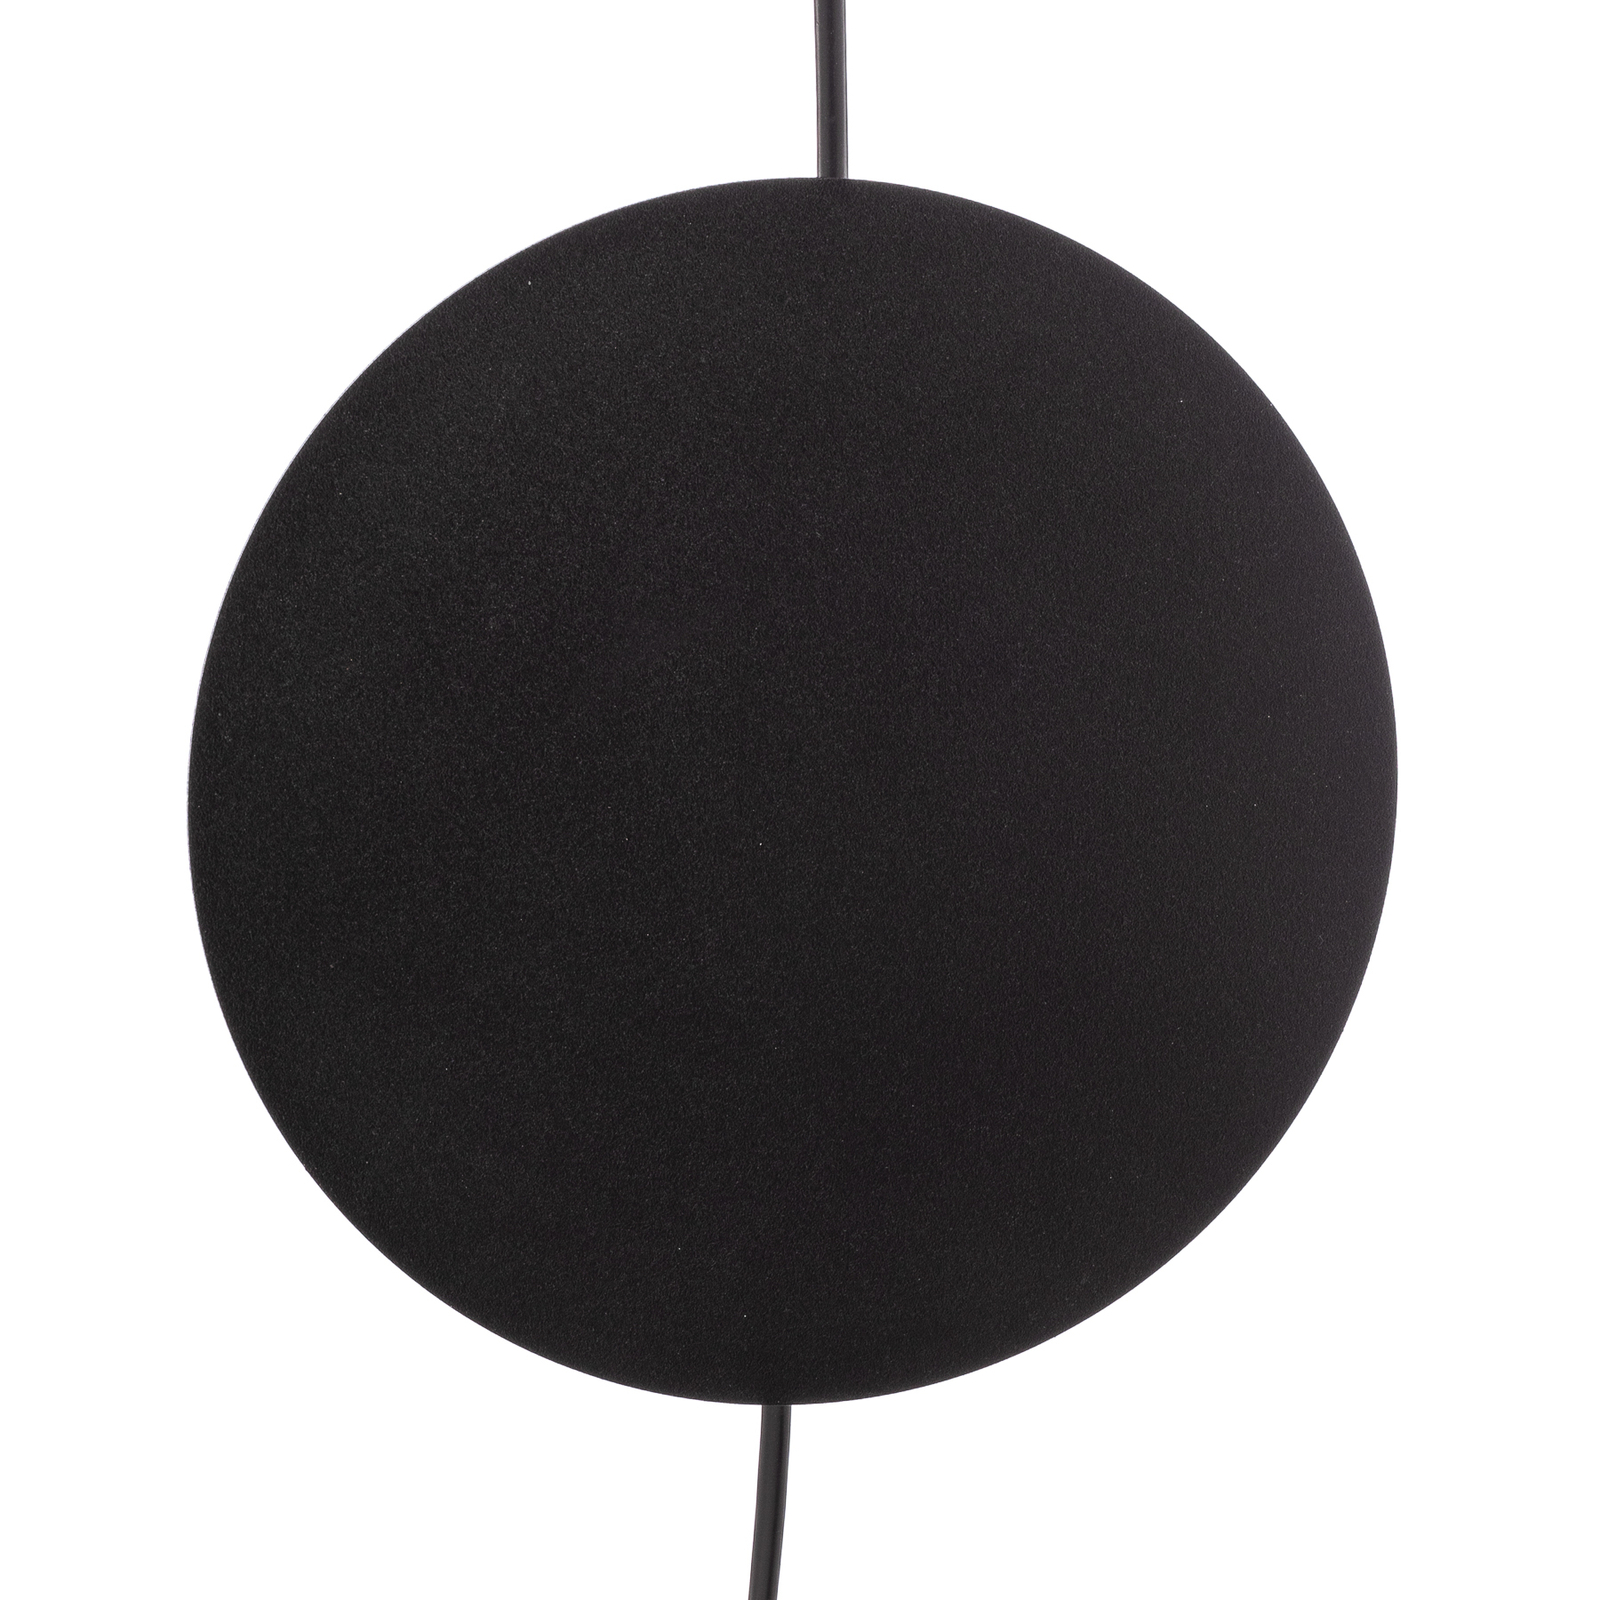 Ramo pendant light, one-bulb, black